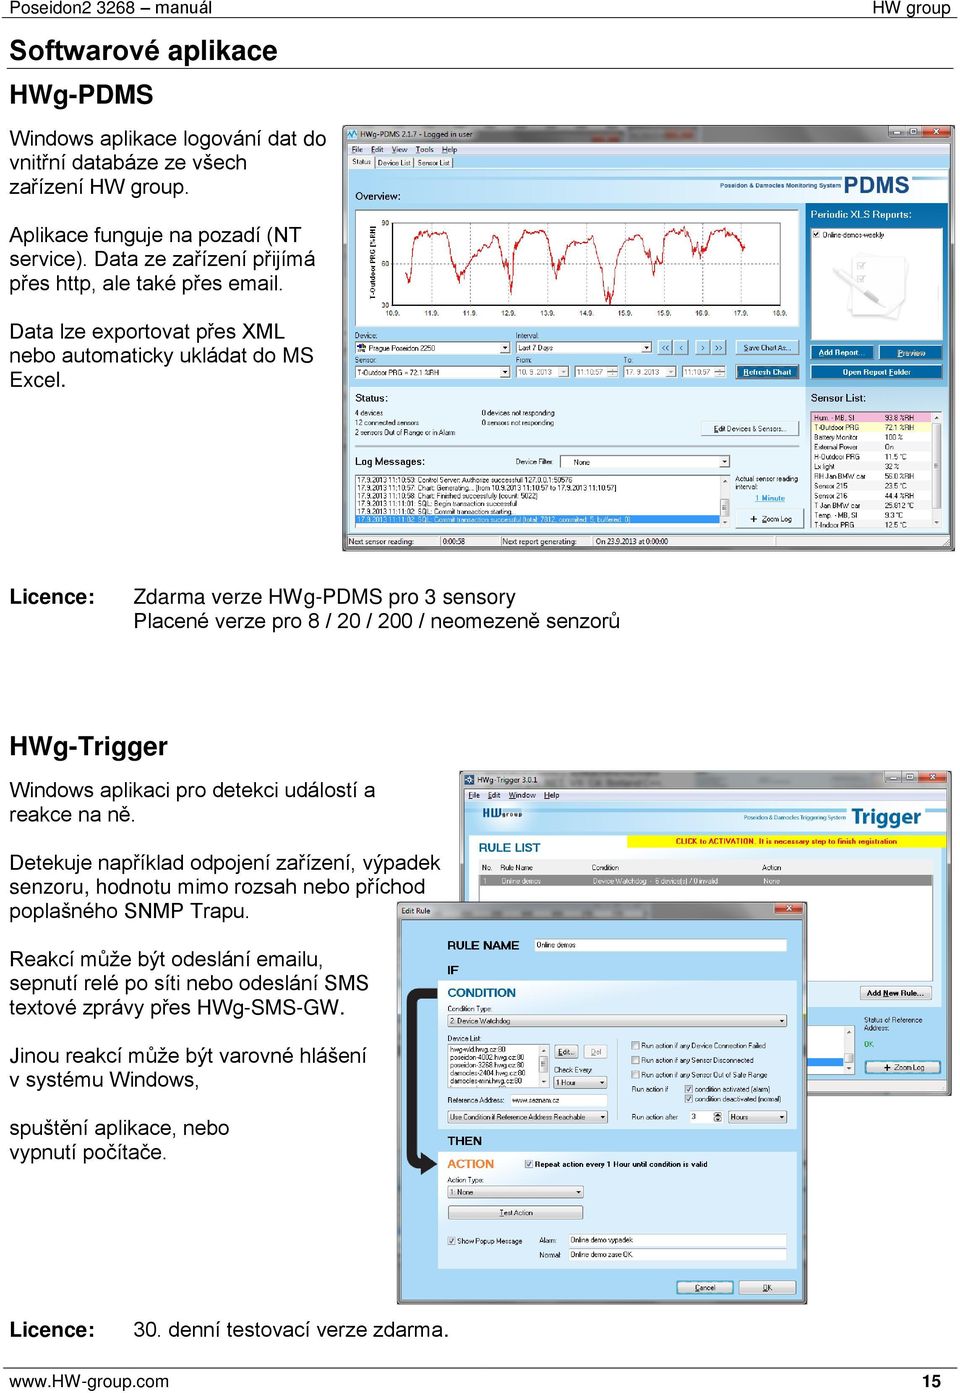 Licence: Zdarma verze HWg-PDMS pro 3 sensory Placené verze pro 8 / 20 / 200 / neomezeně senzorů HWg-Trigger Windows aplikaci pro detekci událostí a reakce na ně.